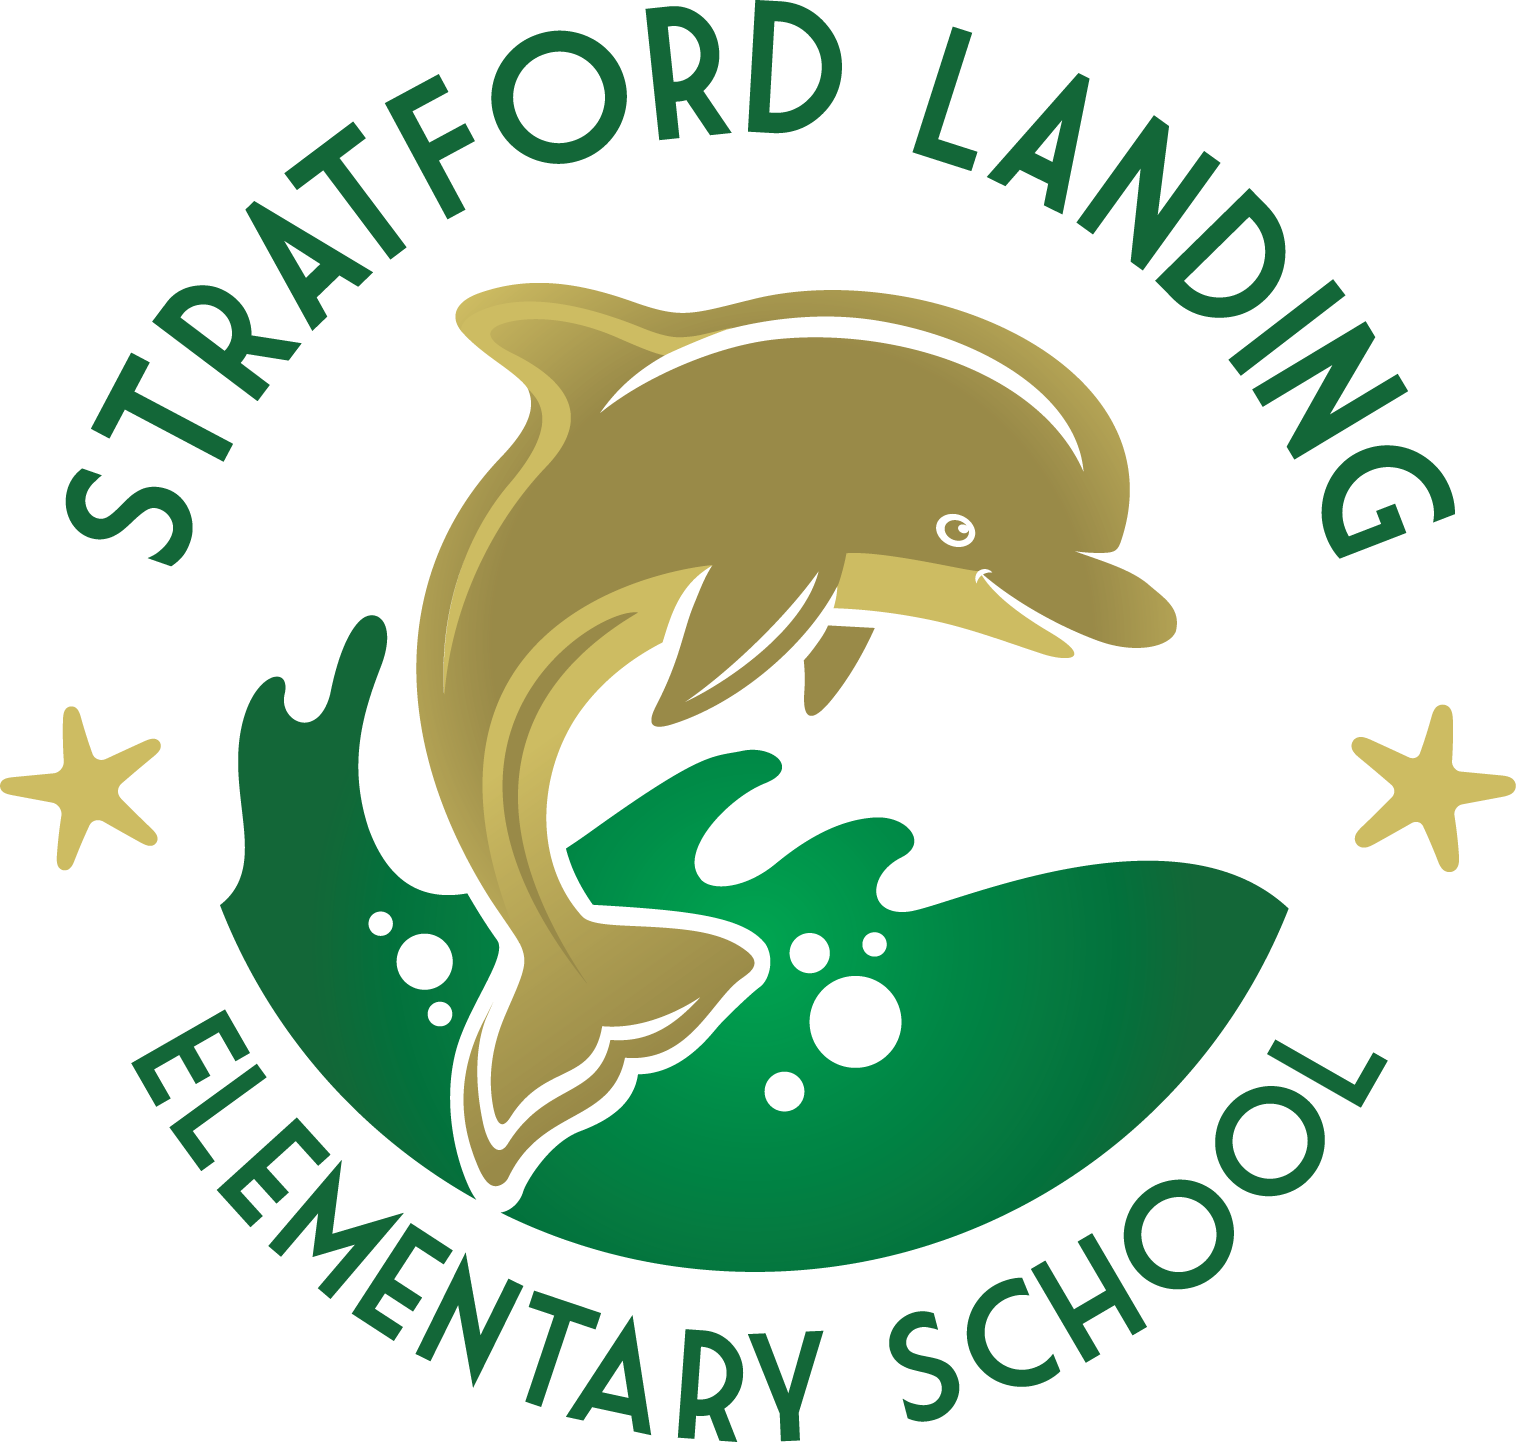 Stratford Landing Elementary School logo